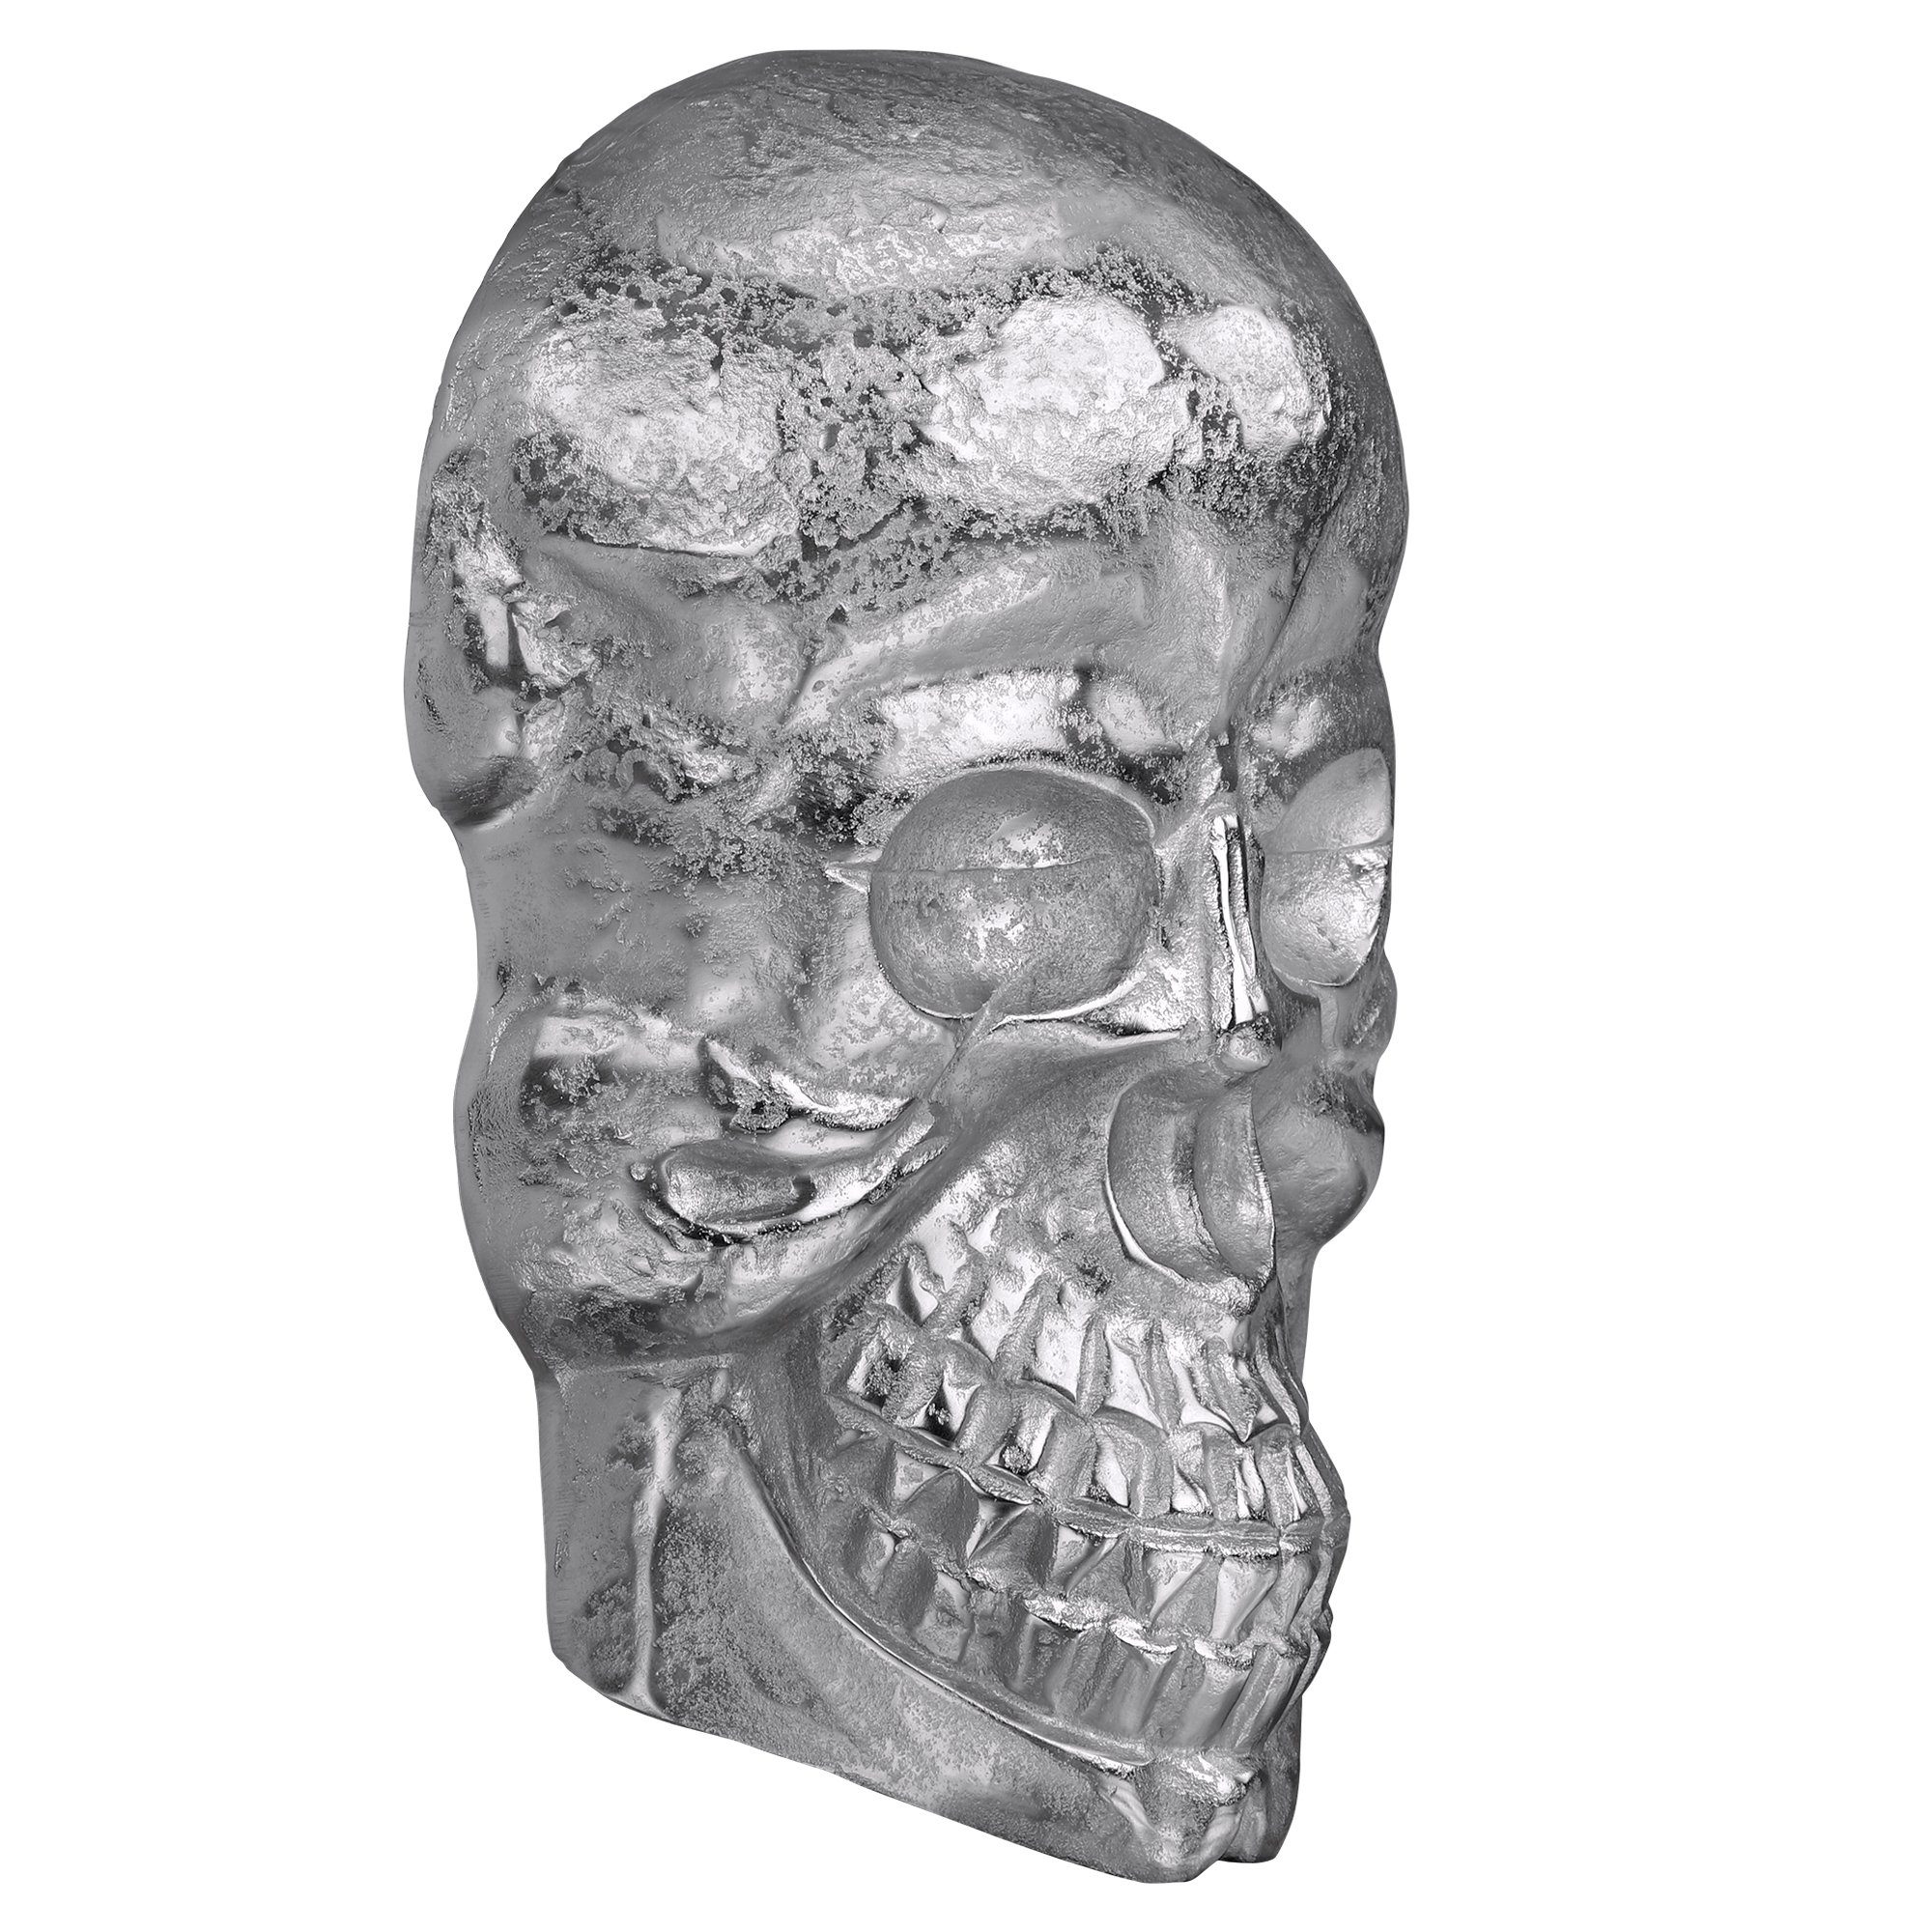 Aluminium Gothic Skulptur kein WOMO-DESIGN Set, (kein Deko Totenkopf Schädel Totenschädel Silber Finish Wandskulptur Skull Glänzend 42x30cm Nickel Set), mit Poliertes